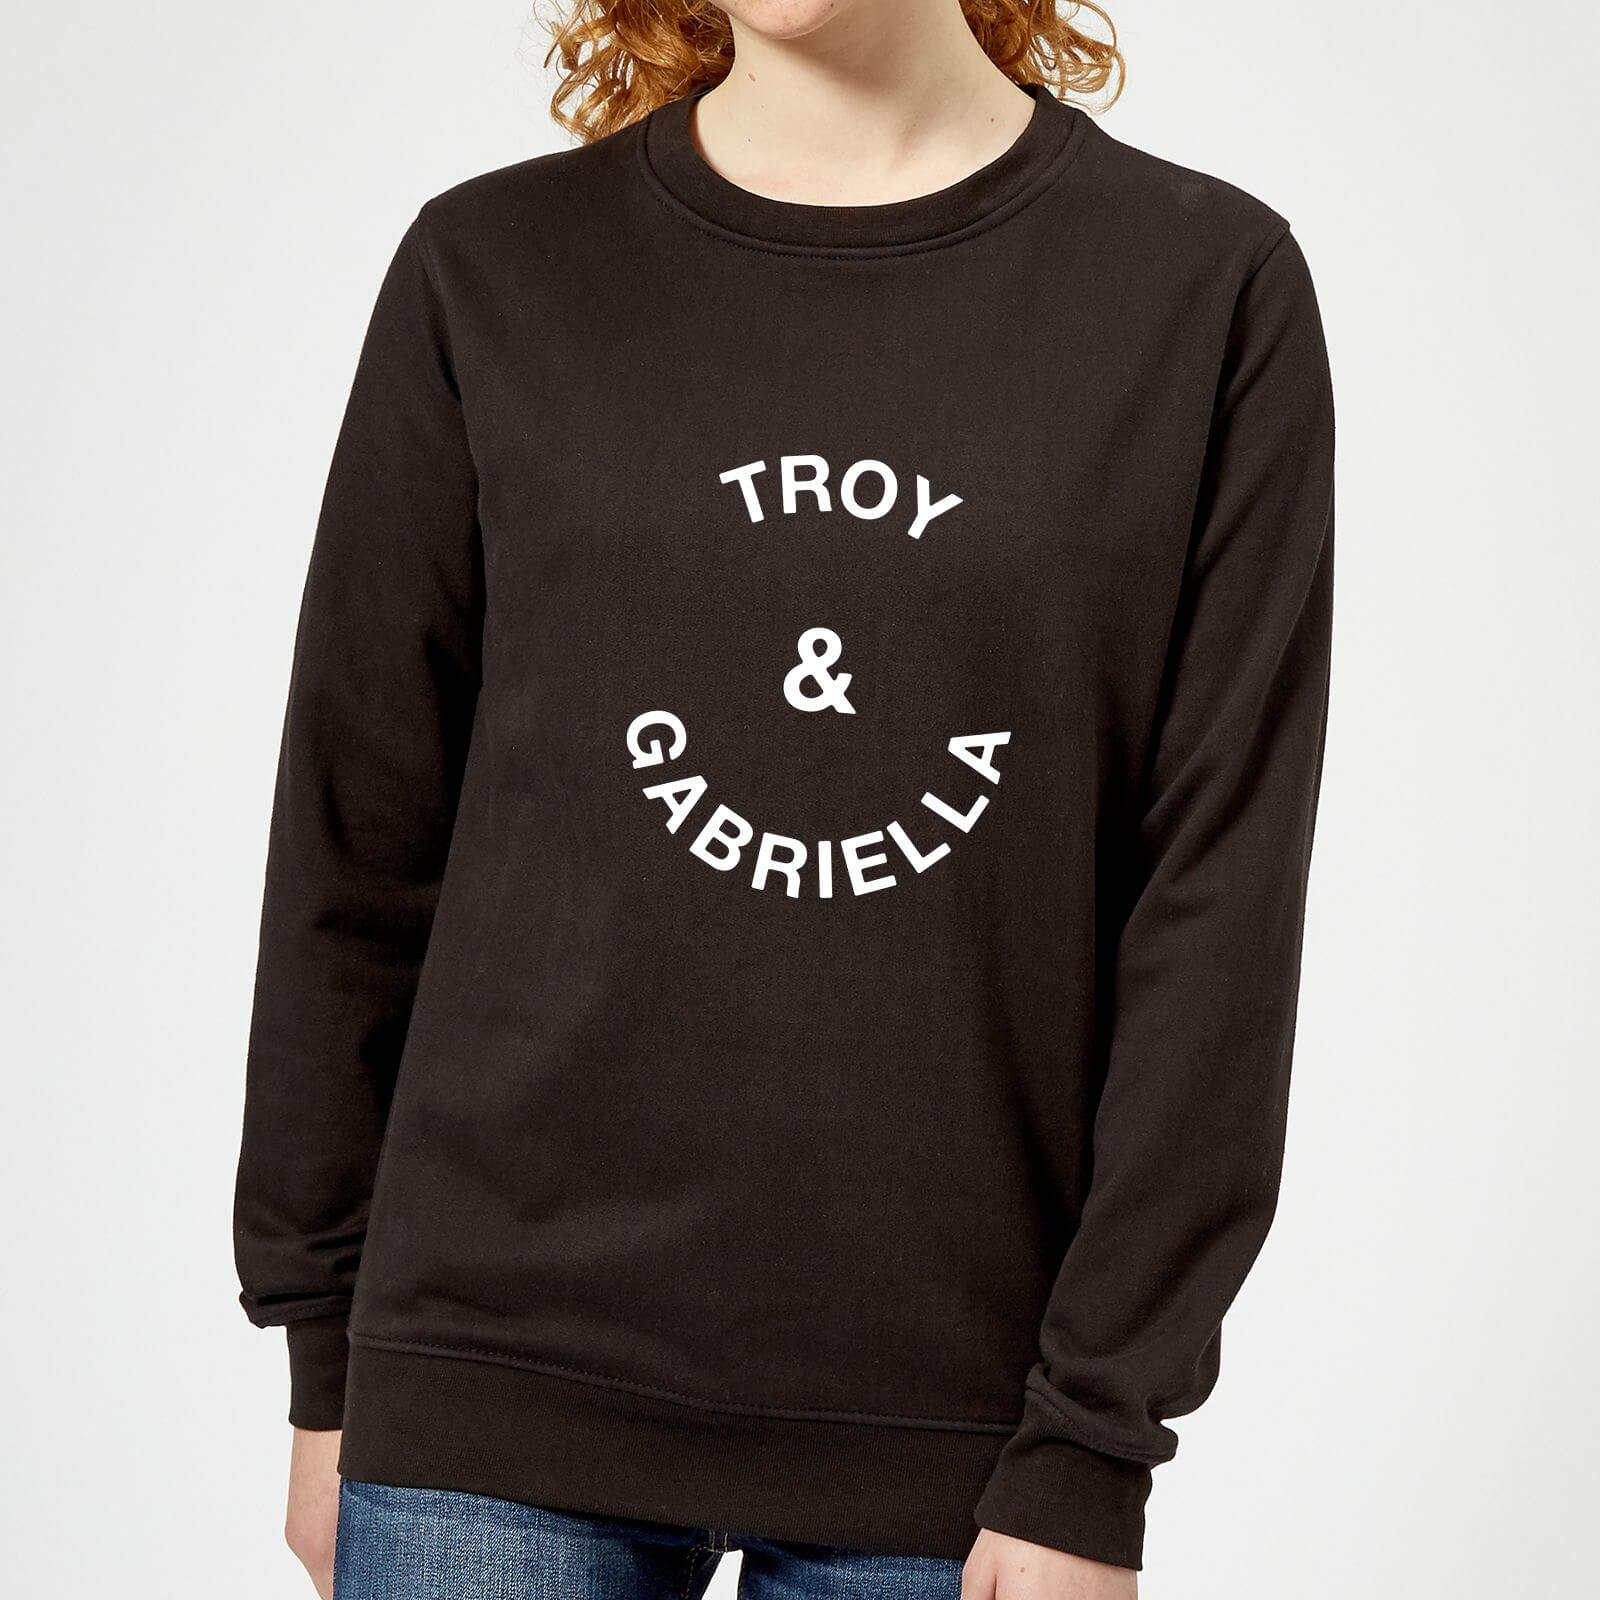 Troy & Gabriella Women's Sweatshirt - Black - 5XL - Black